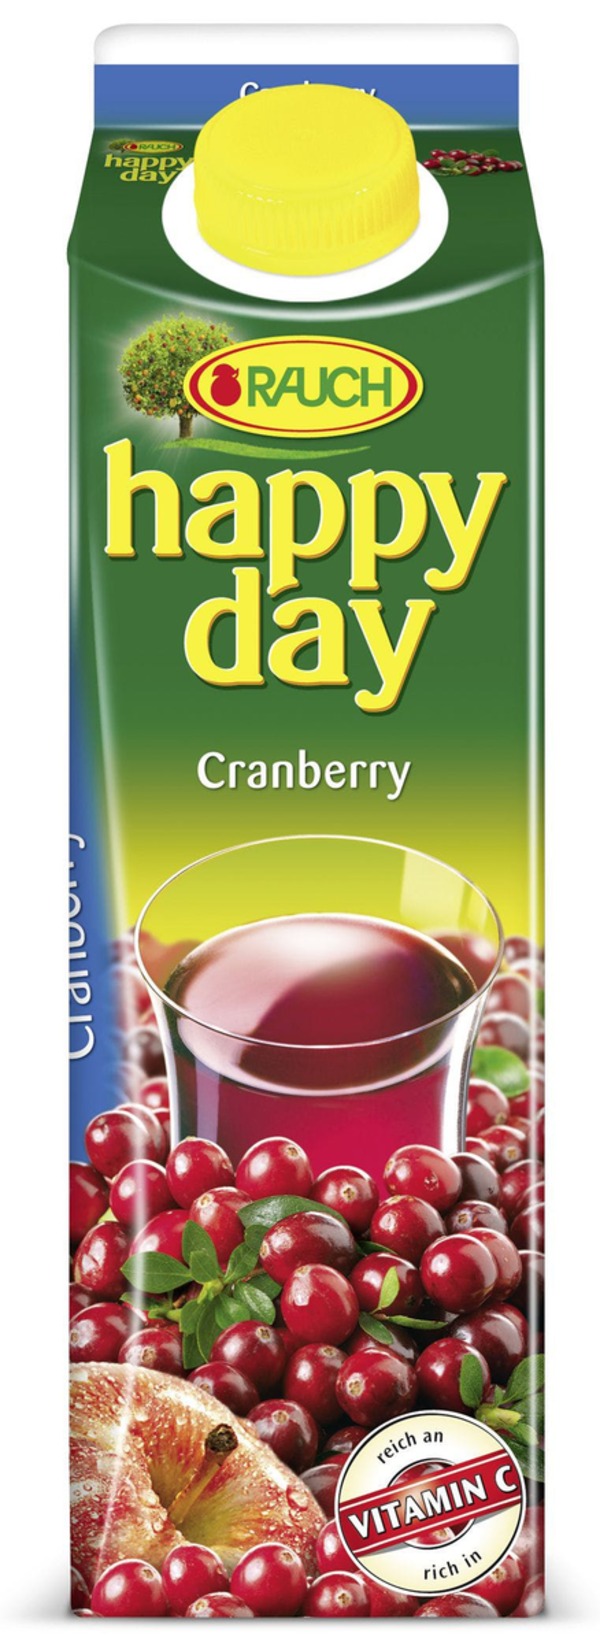 Bild 1 von Happy Day Fruchtsaftgetränk Cranberry mind. 30 % Fruchtgehalt Tetra Pack 6 x 1 l (6 l)